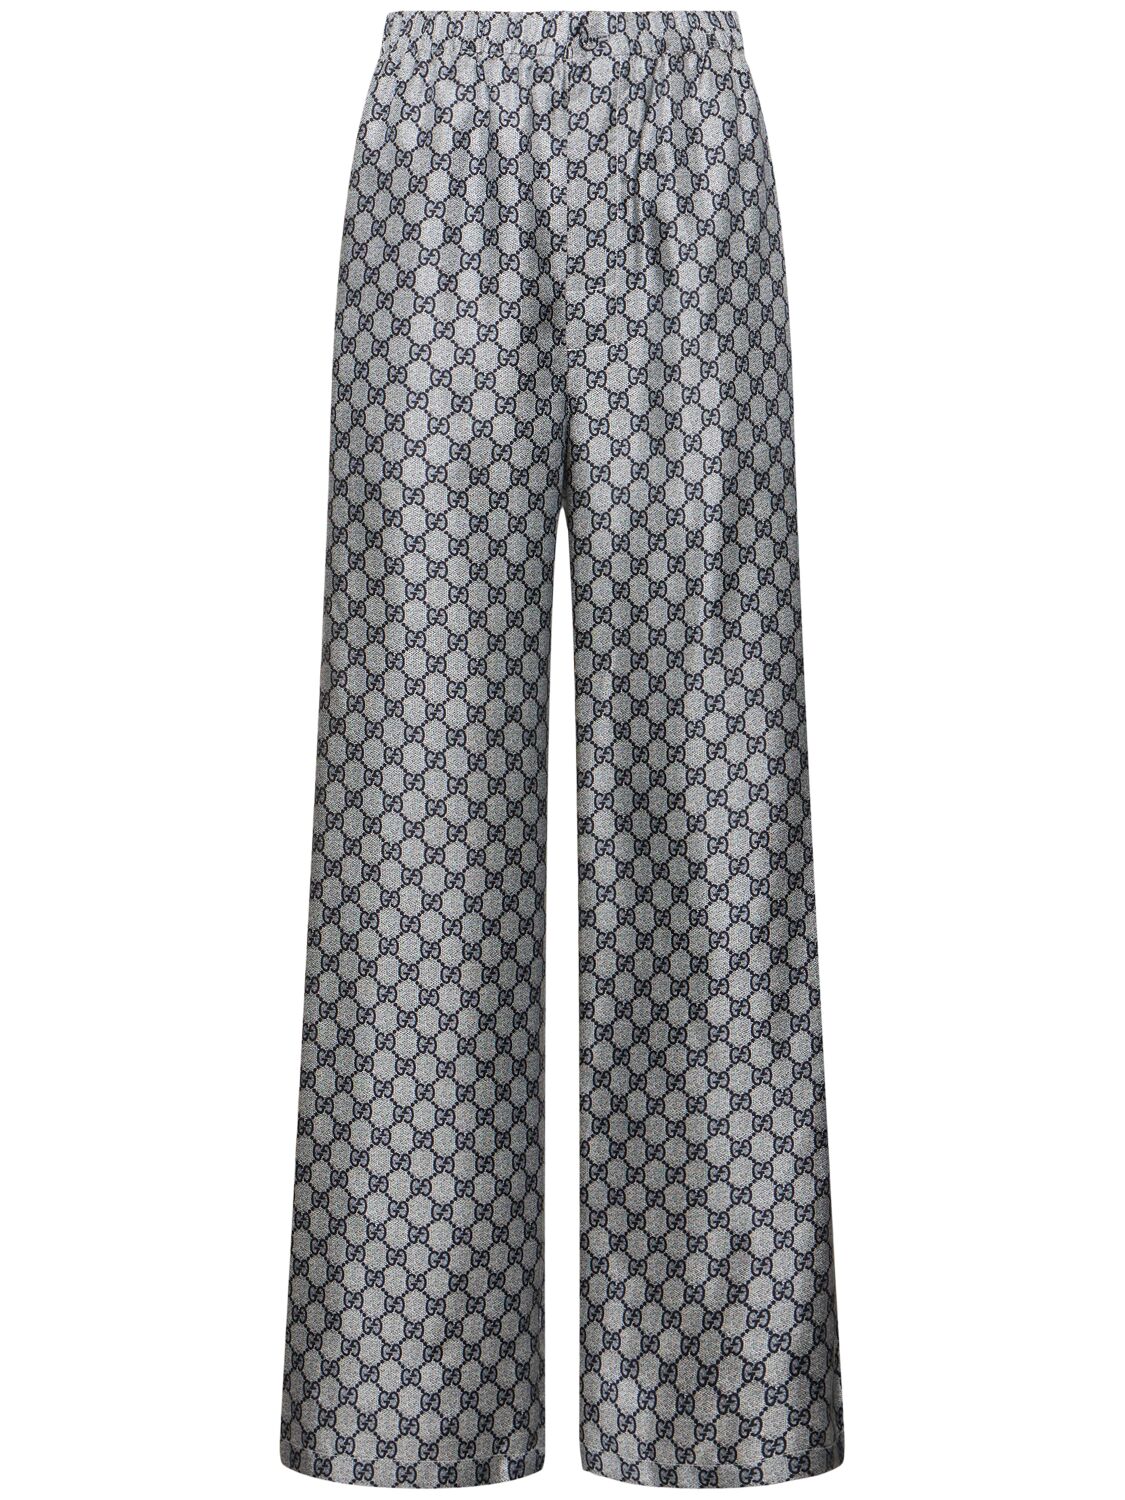 Gucci Gg Supreme Silk Trousers In Blue/white